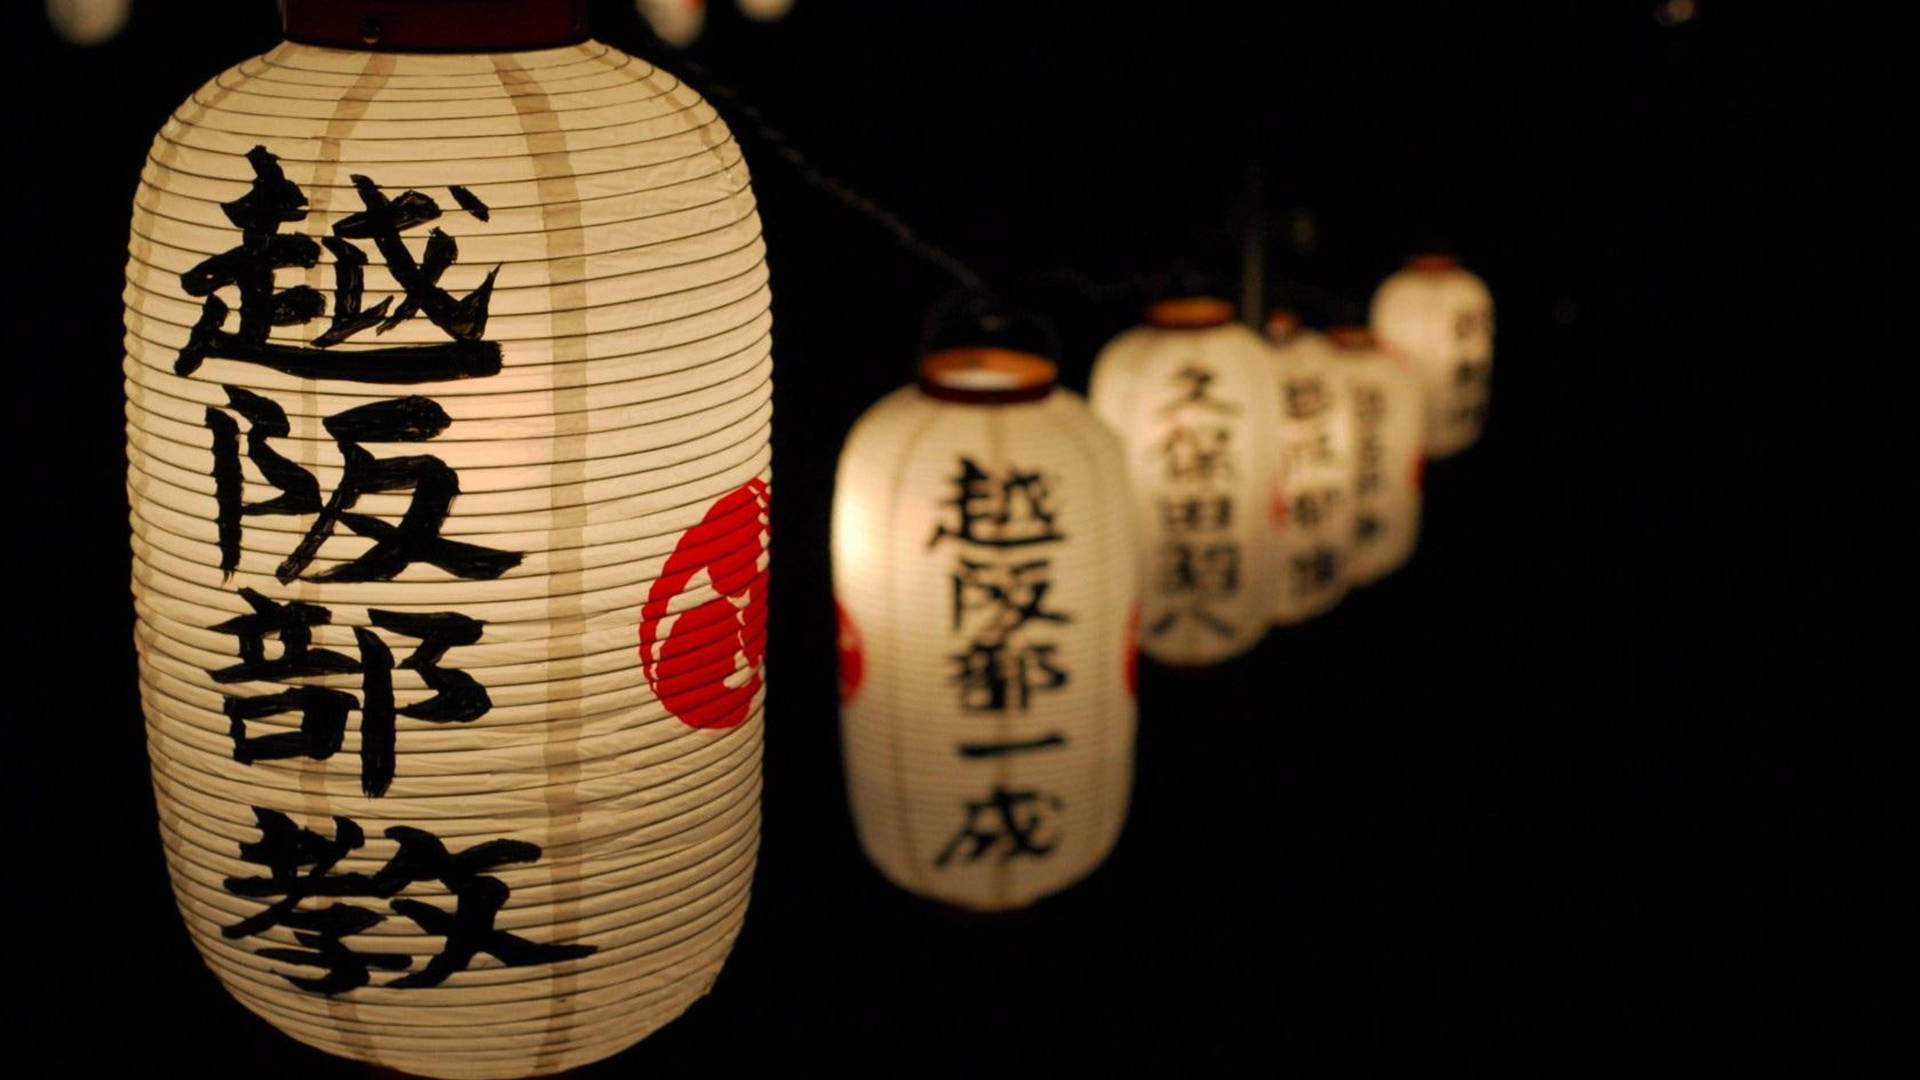 Cool Japanese Kanji Lanterns Background